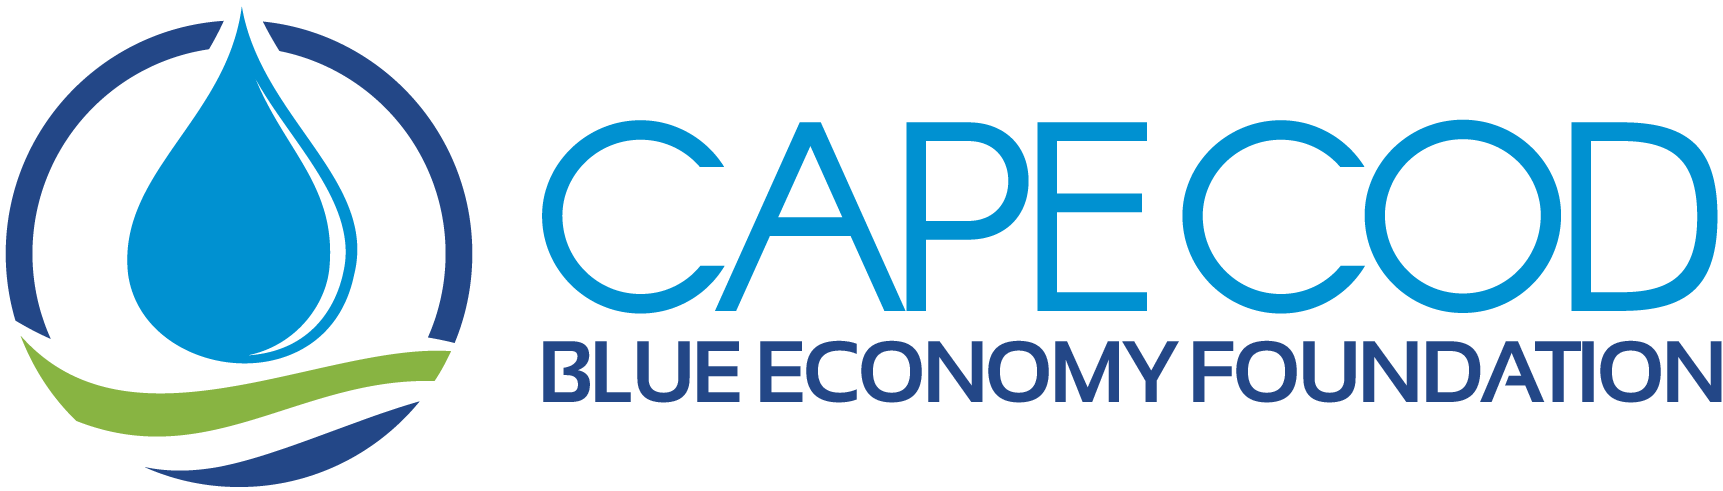 Cape Cod Blue Economy